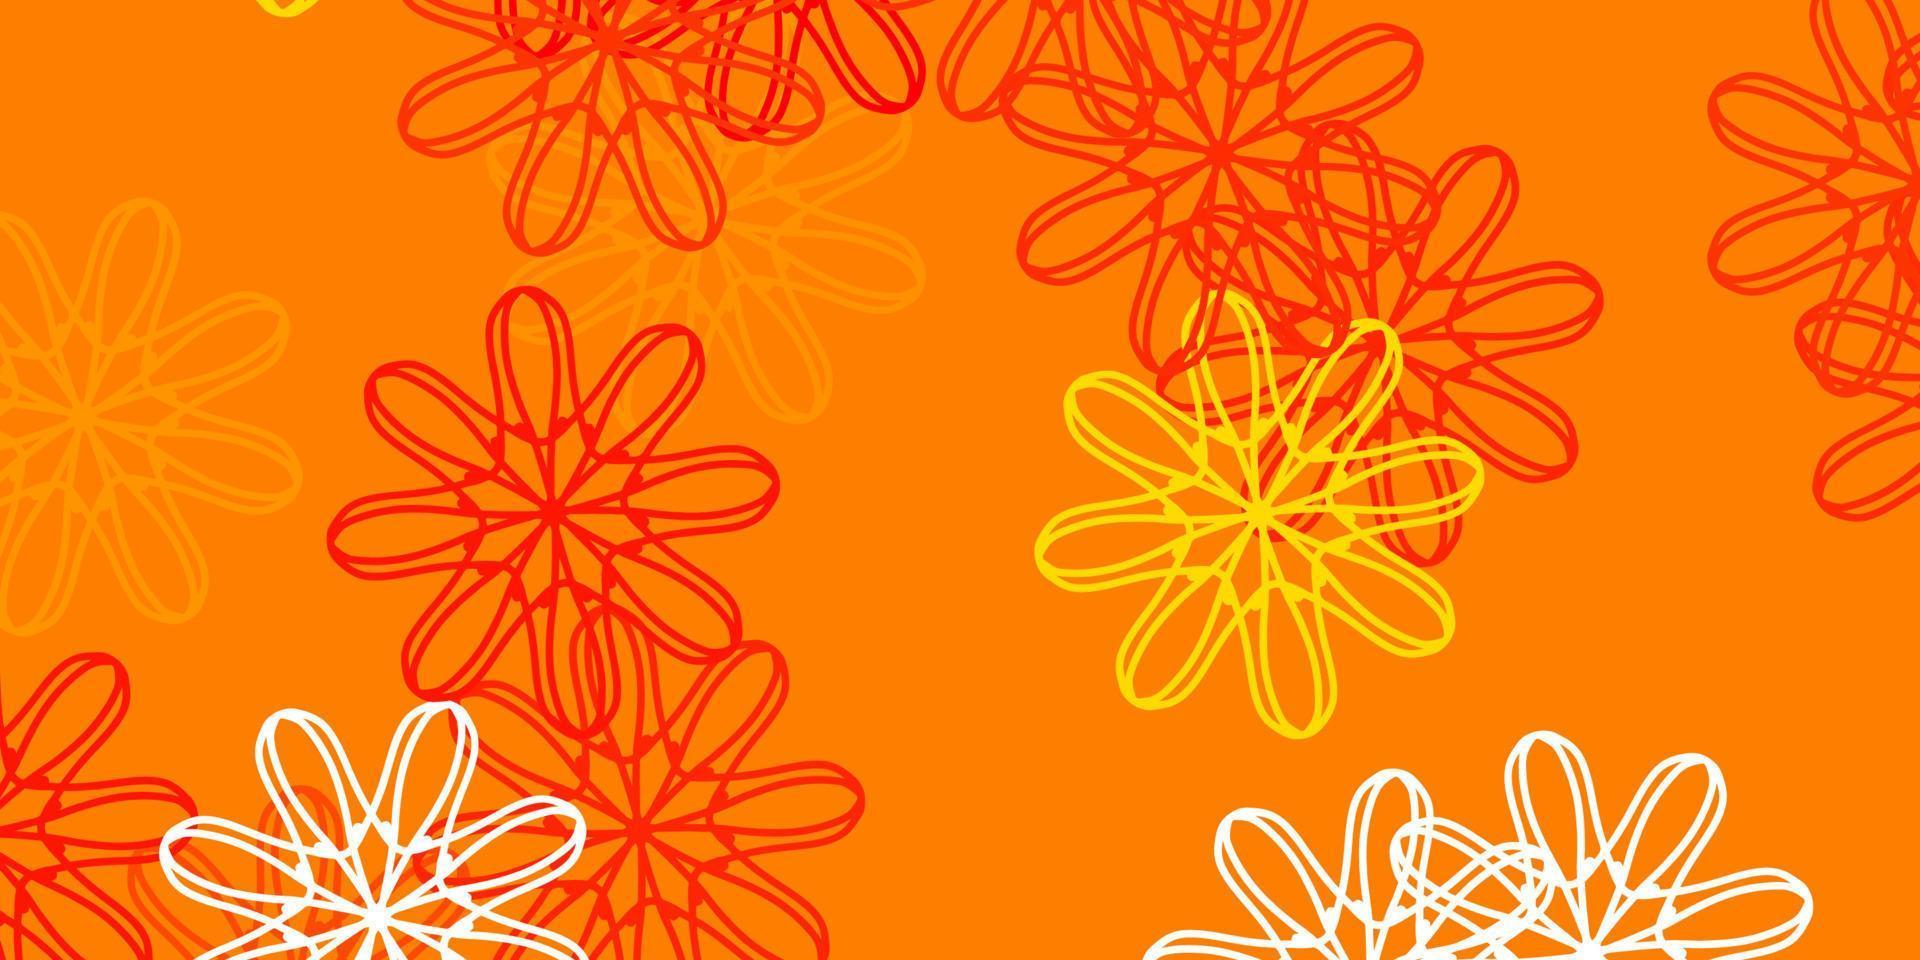 toile de fond naturel vecteur orange clair avec des fleurs.